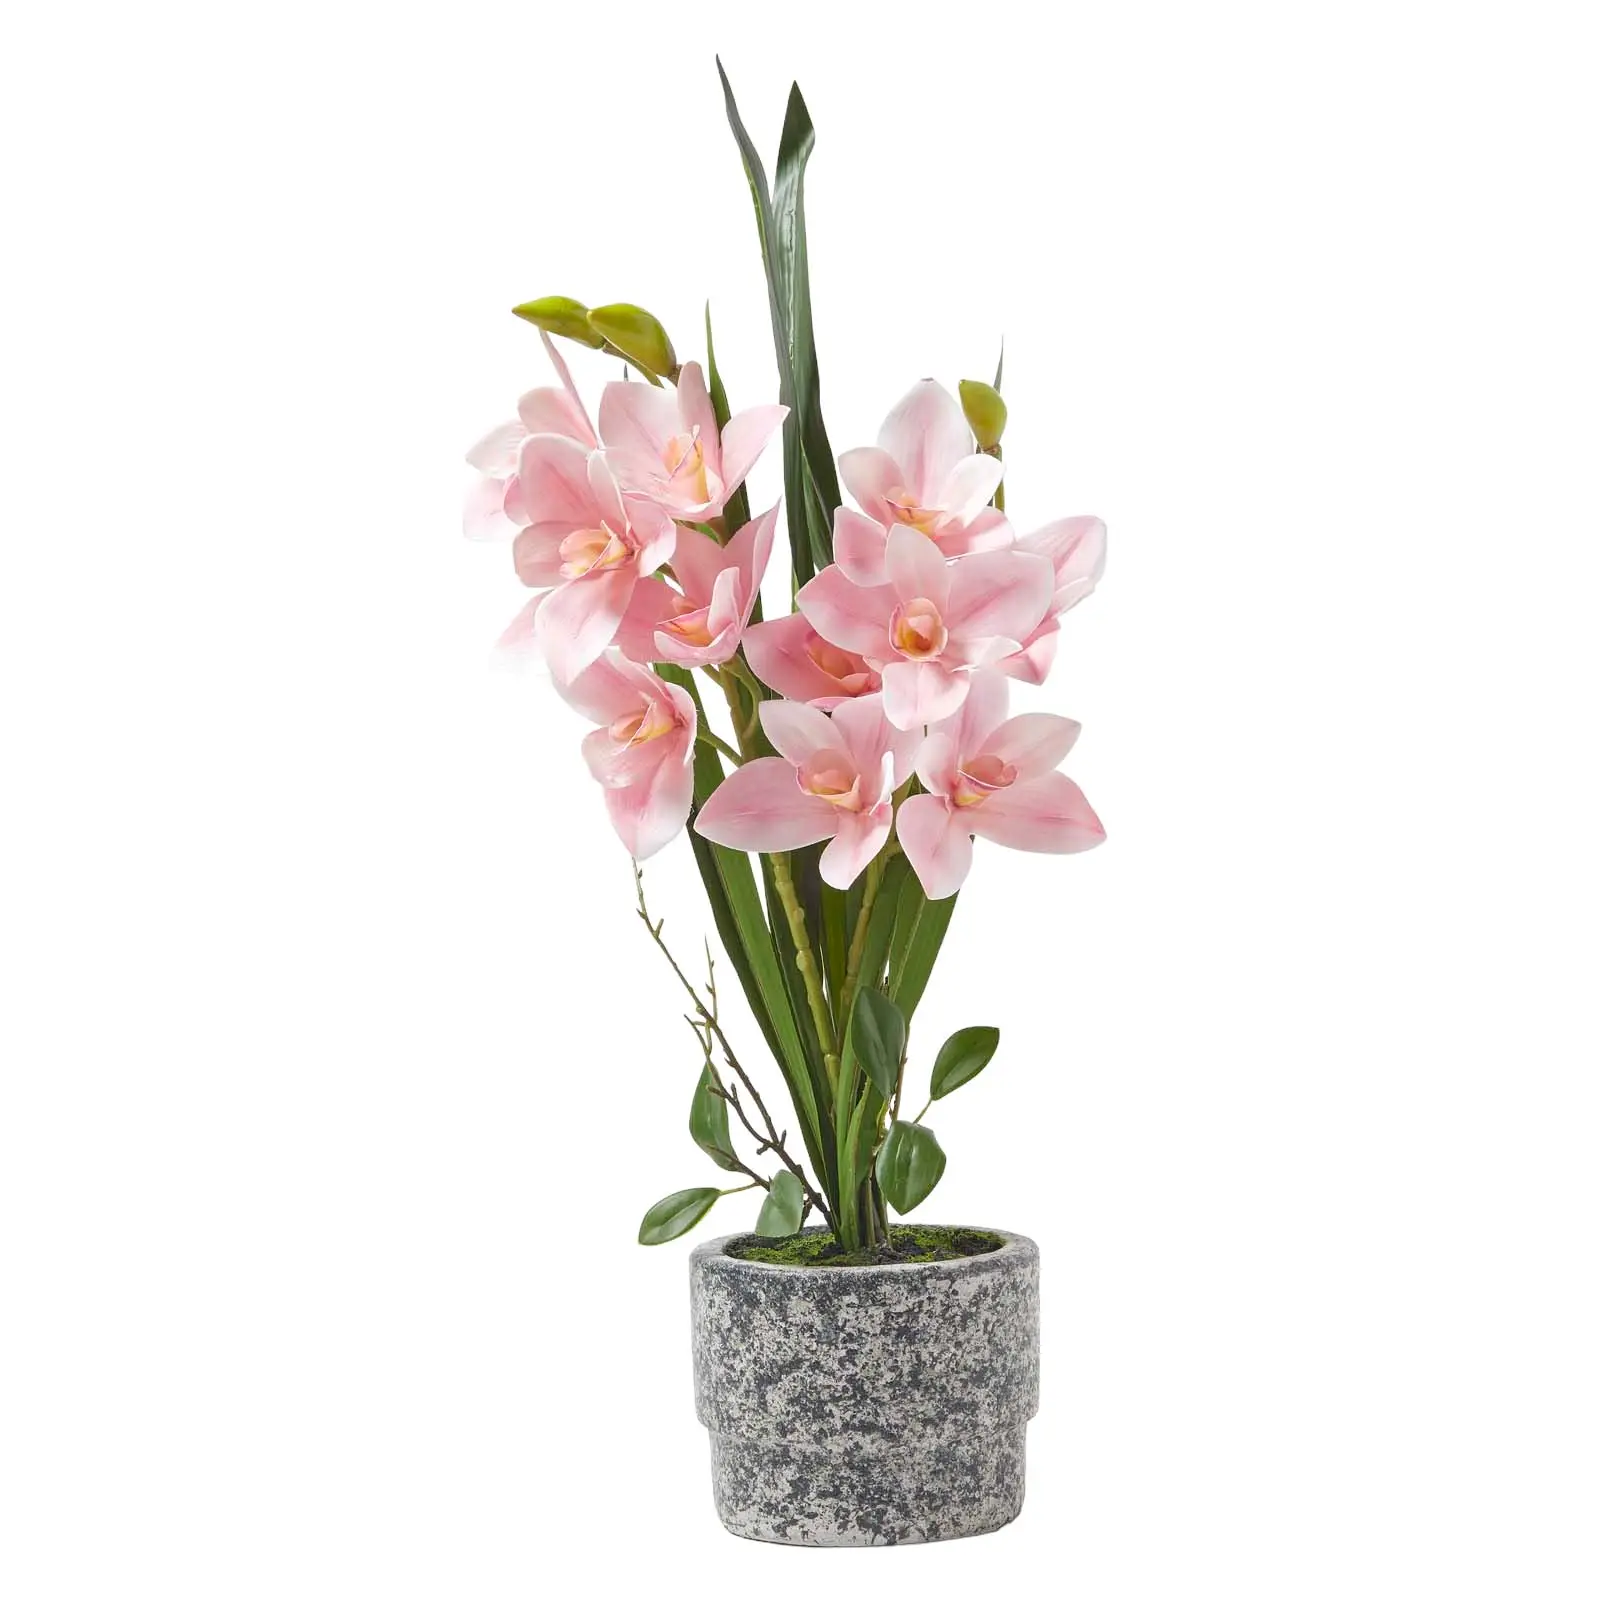 Zement-Topf cm Orchidee K眉nstliche im 58